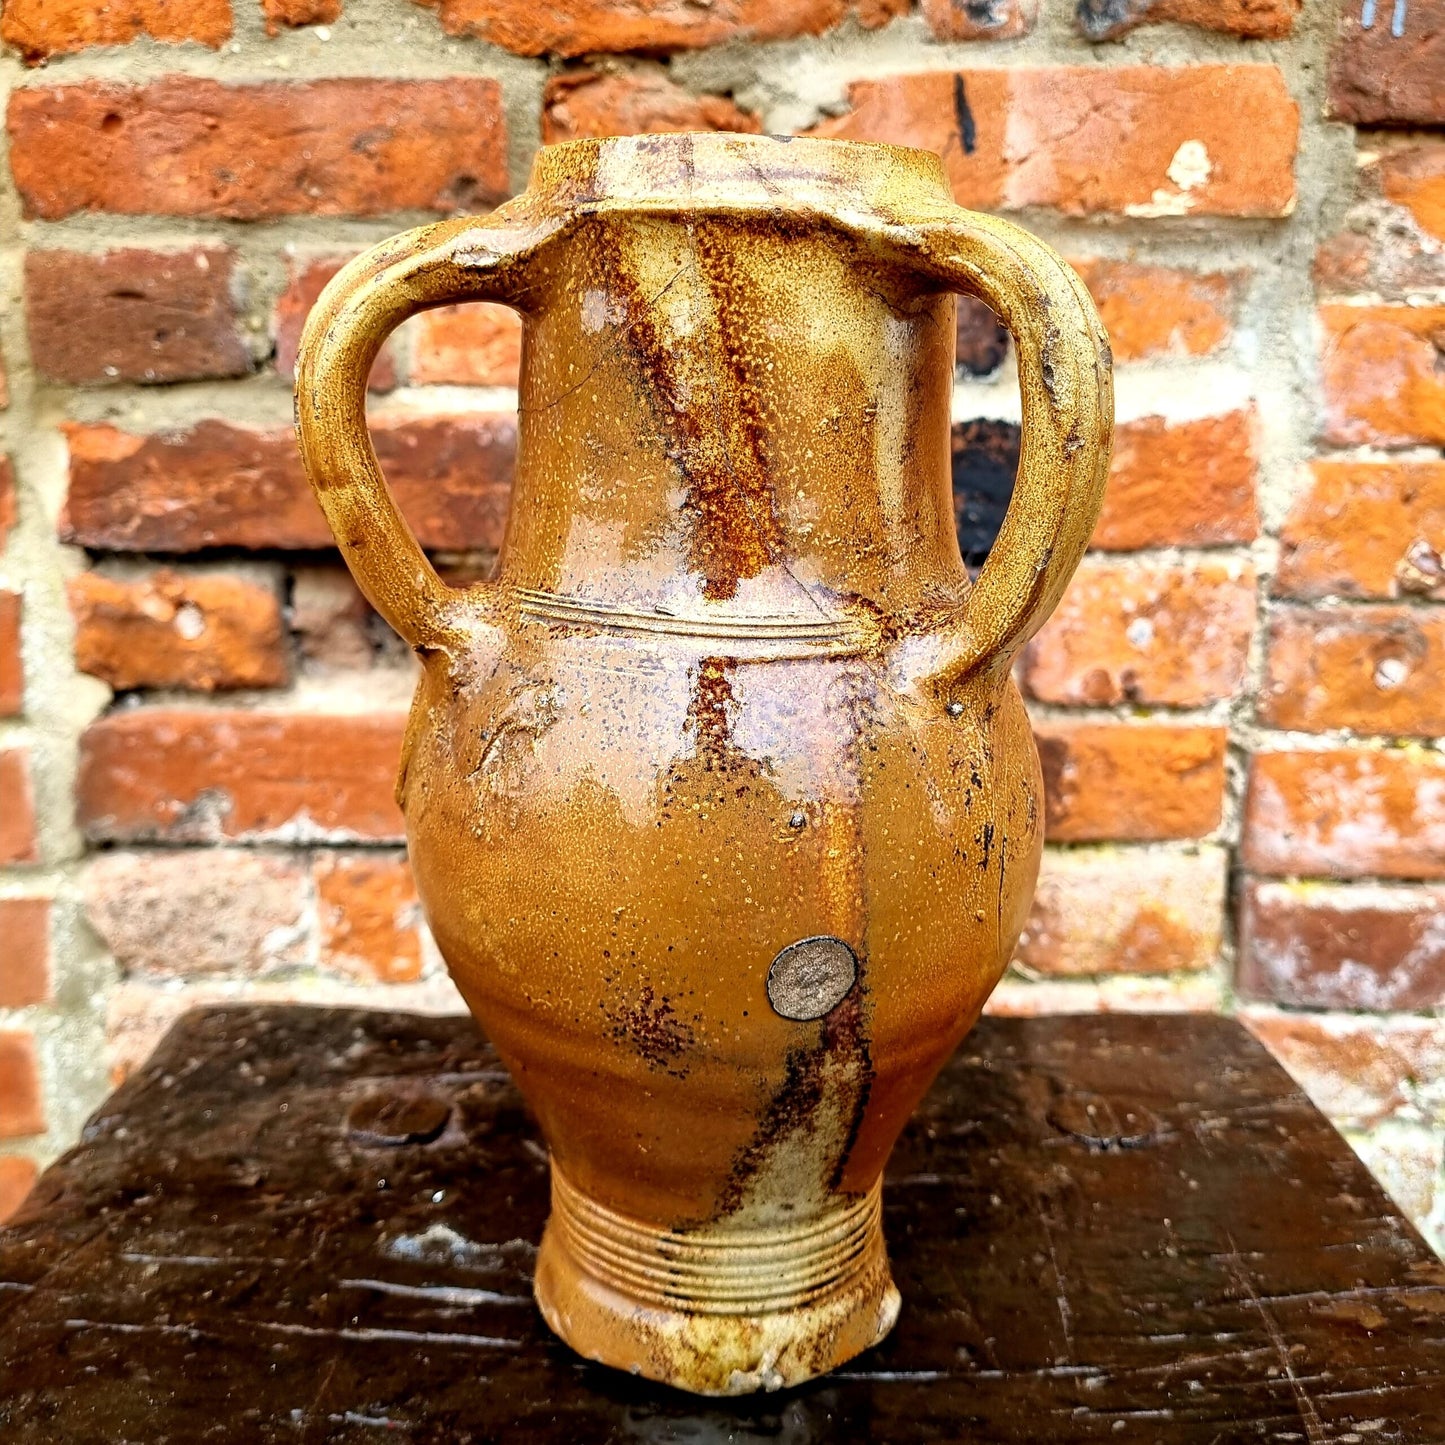 Rare Mid 16thC Antique Raerenware Three Handled Salt Glazed Stoneware Jug or Dreihenkelkrug, Circa 1550